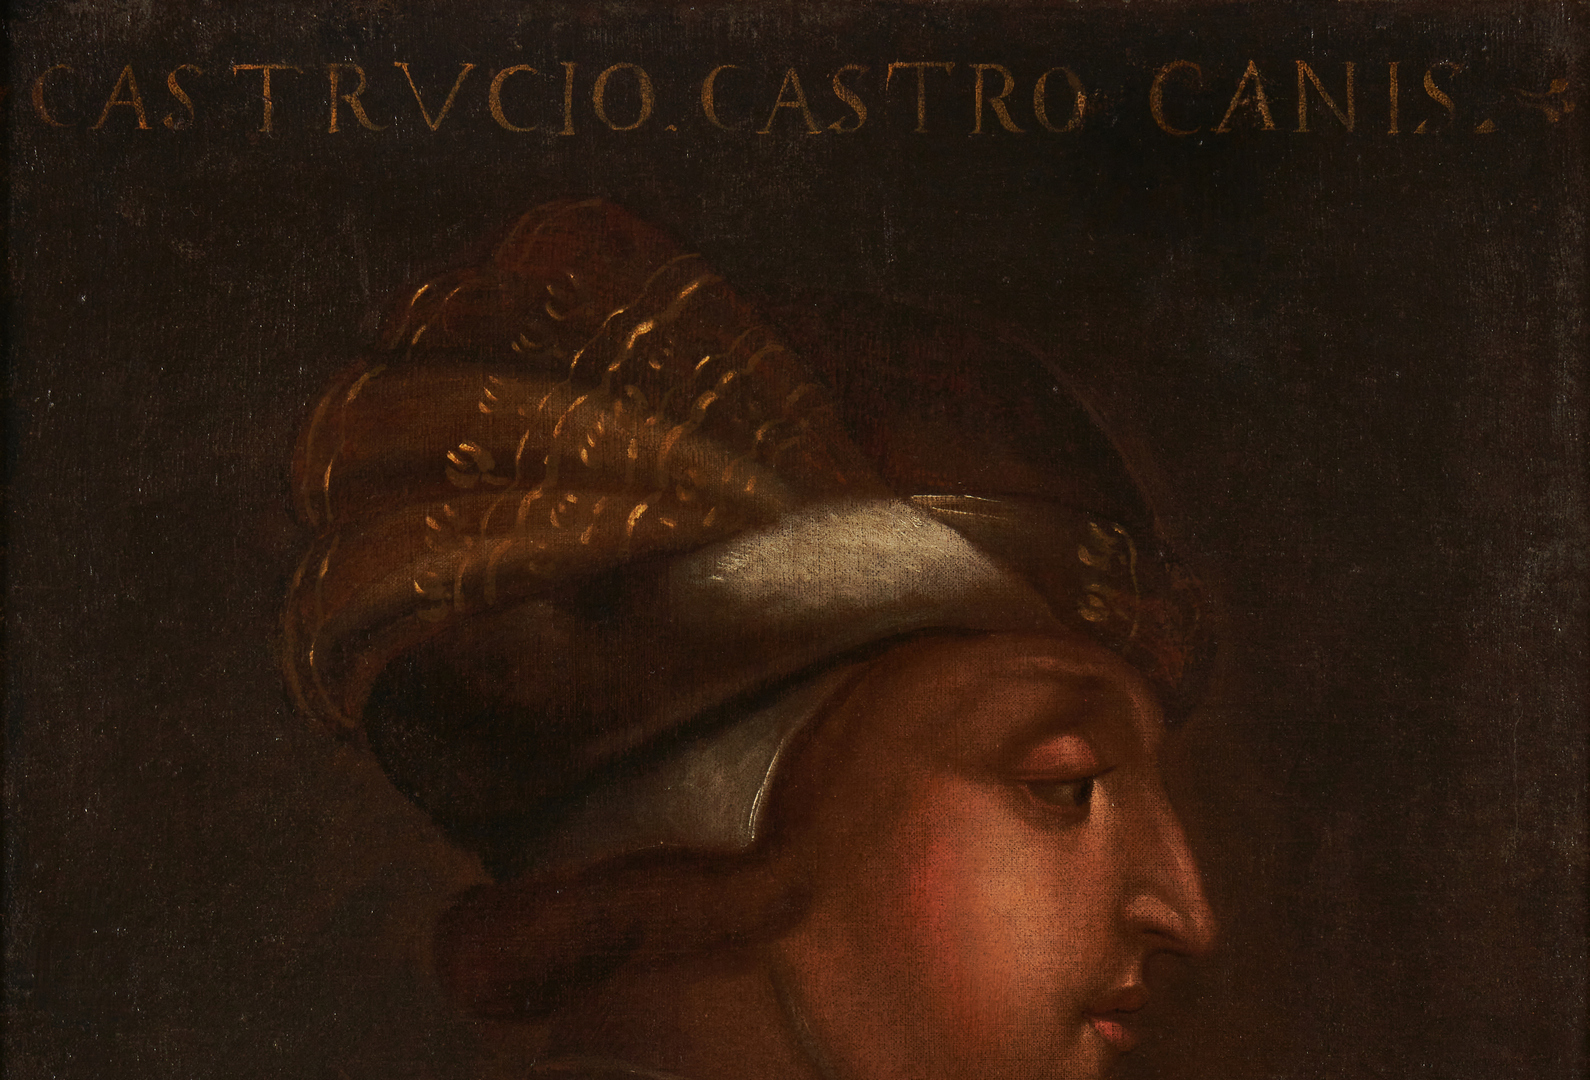 Lot 680: 16th C. Italian Portrait, Castruccio Castricane